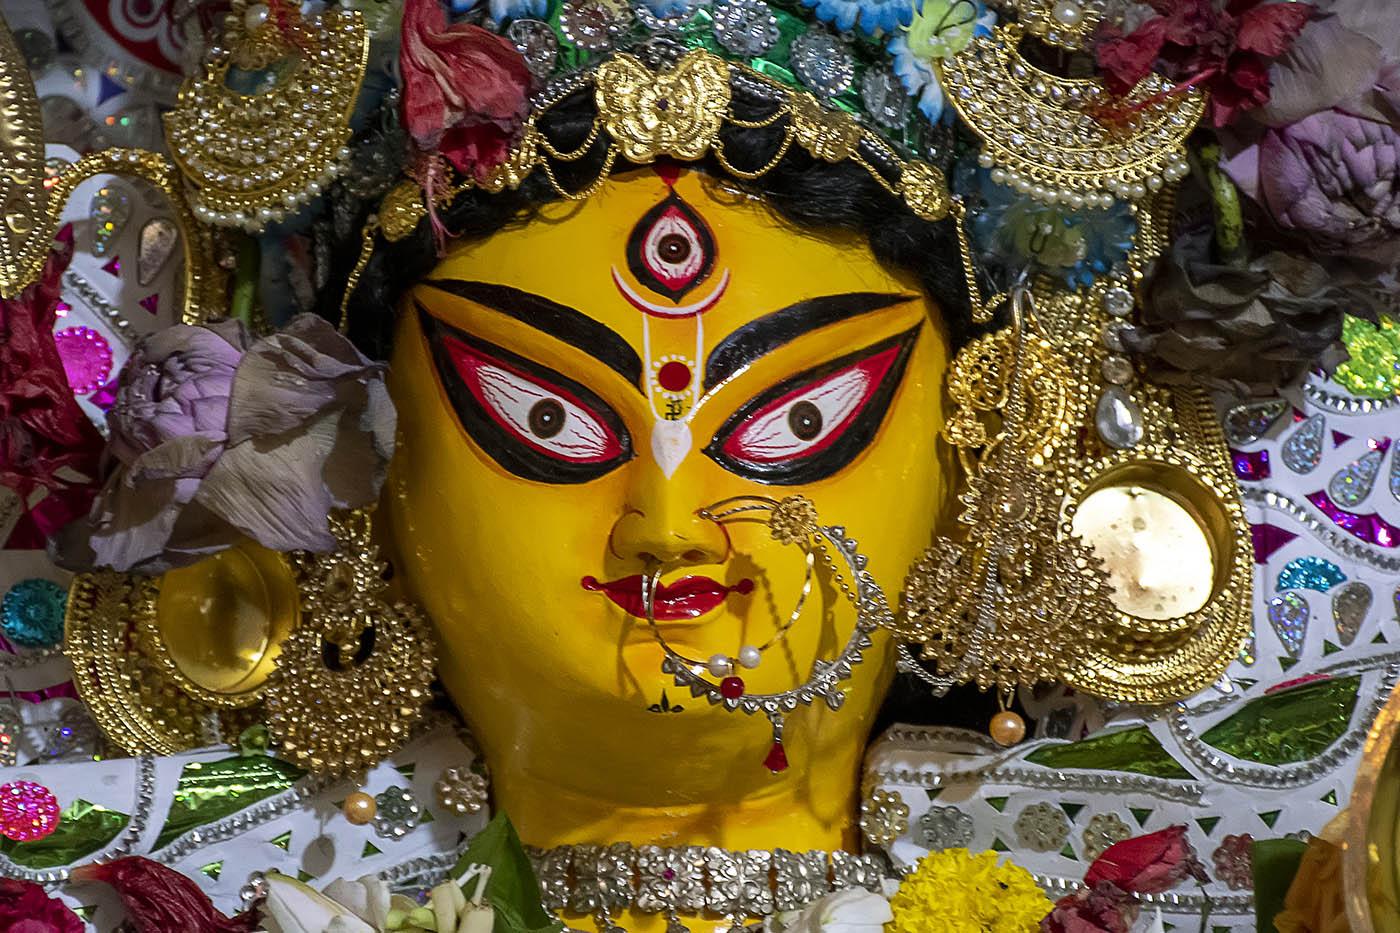 Shri Shri Giridhari Mandir 2021